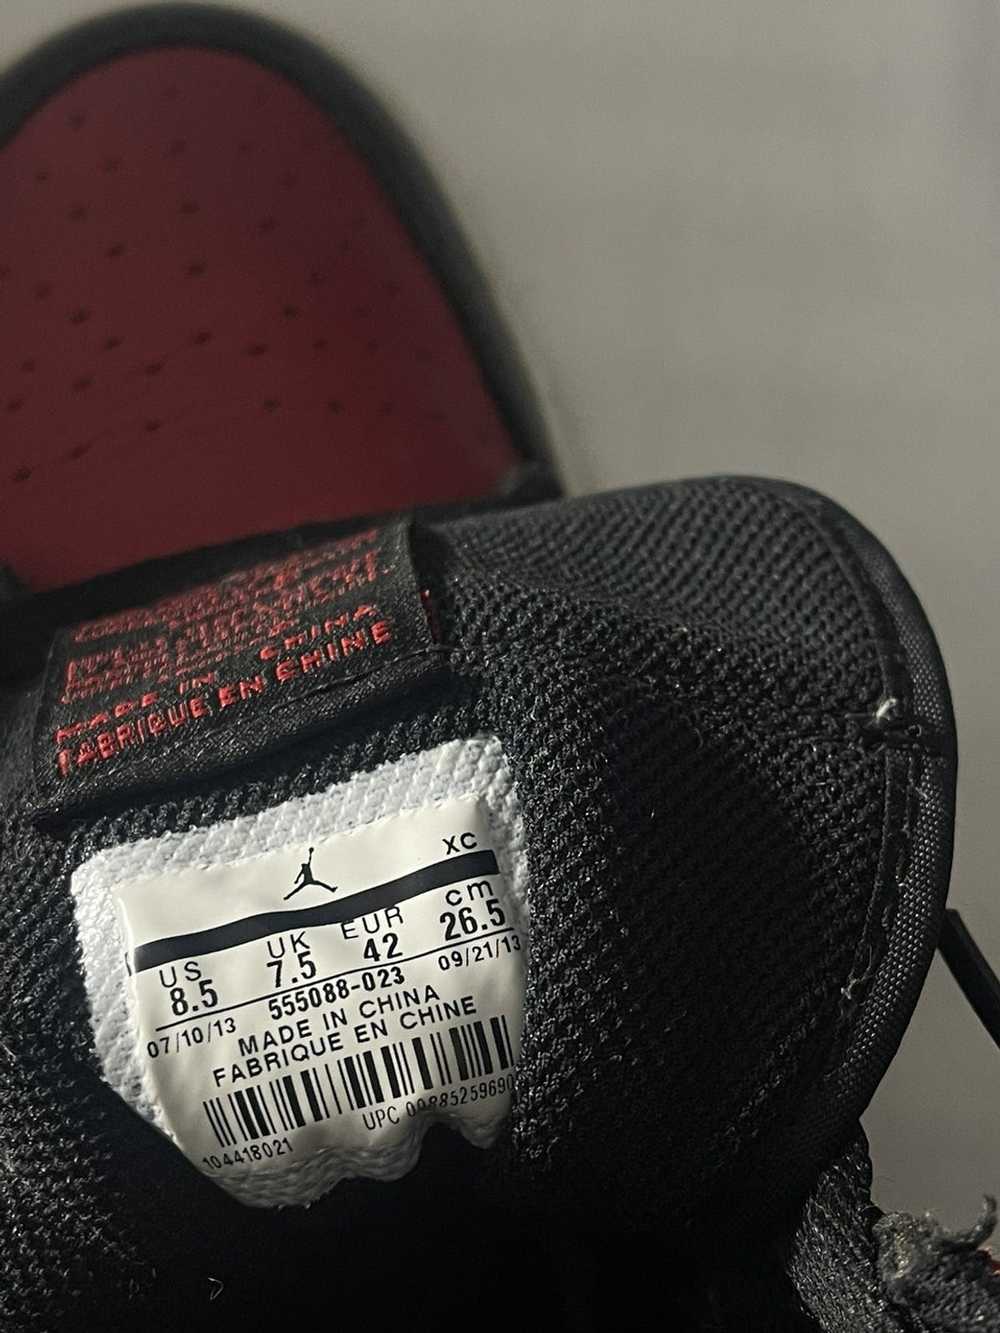 Jordan Brand × Nike Air Jordan 1 BRED (2013) - image 5